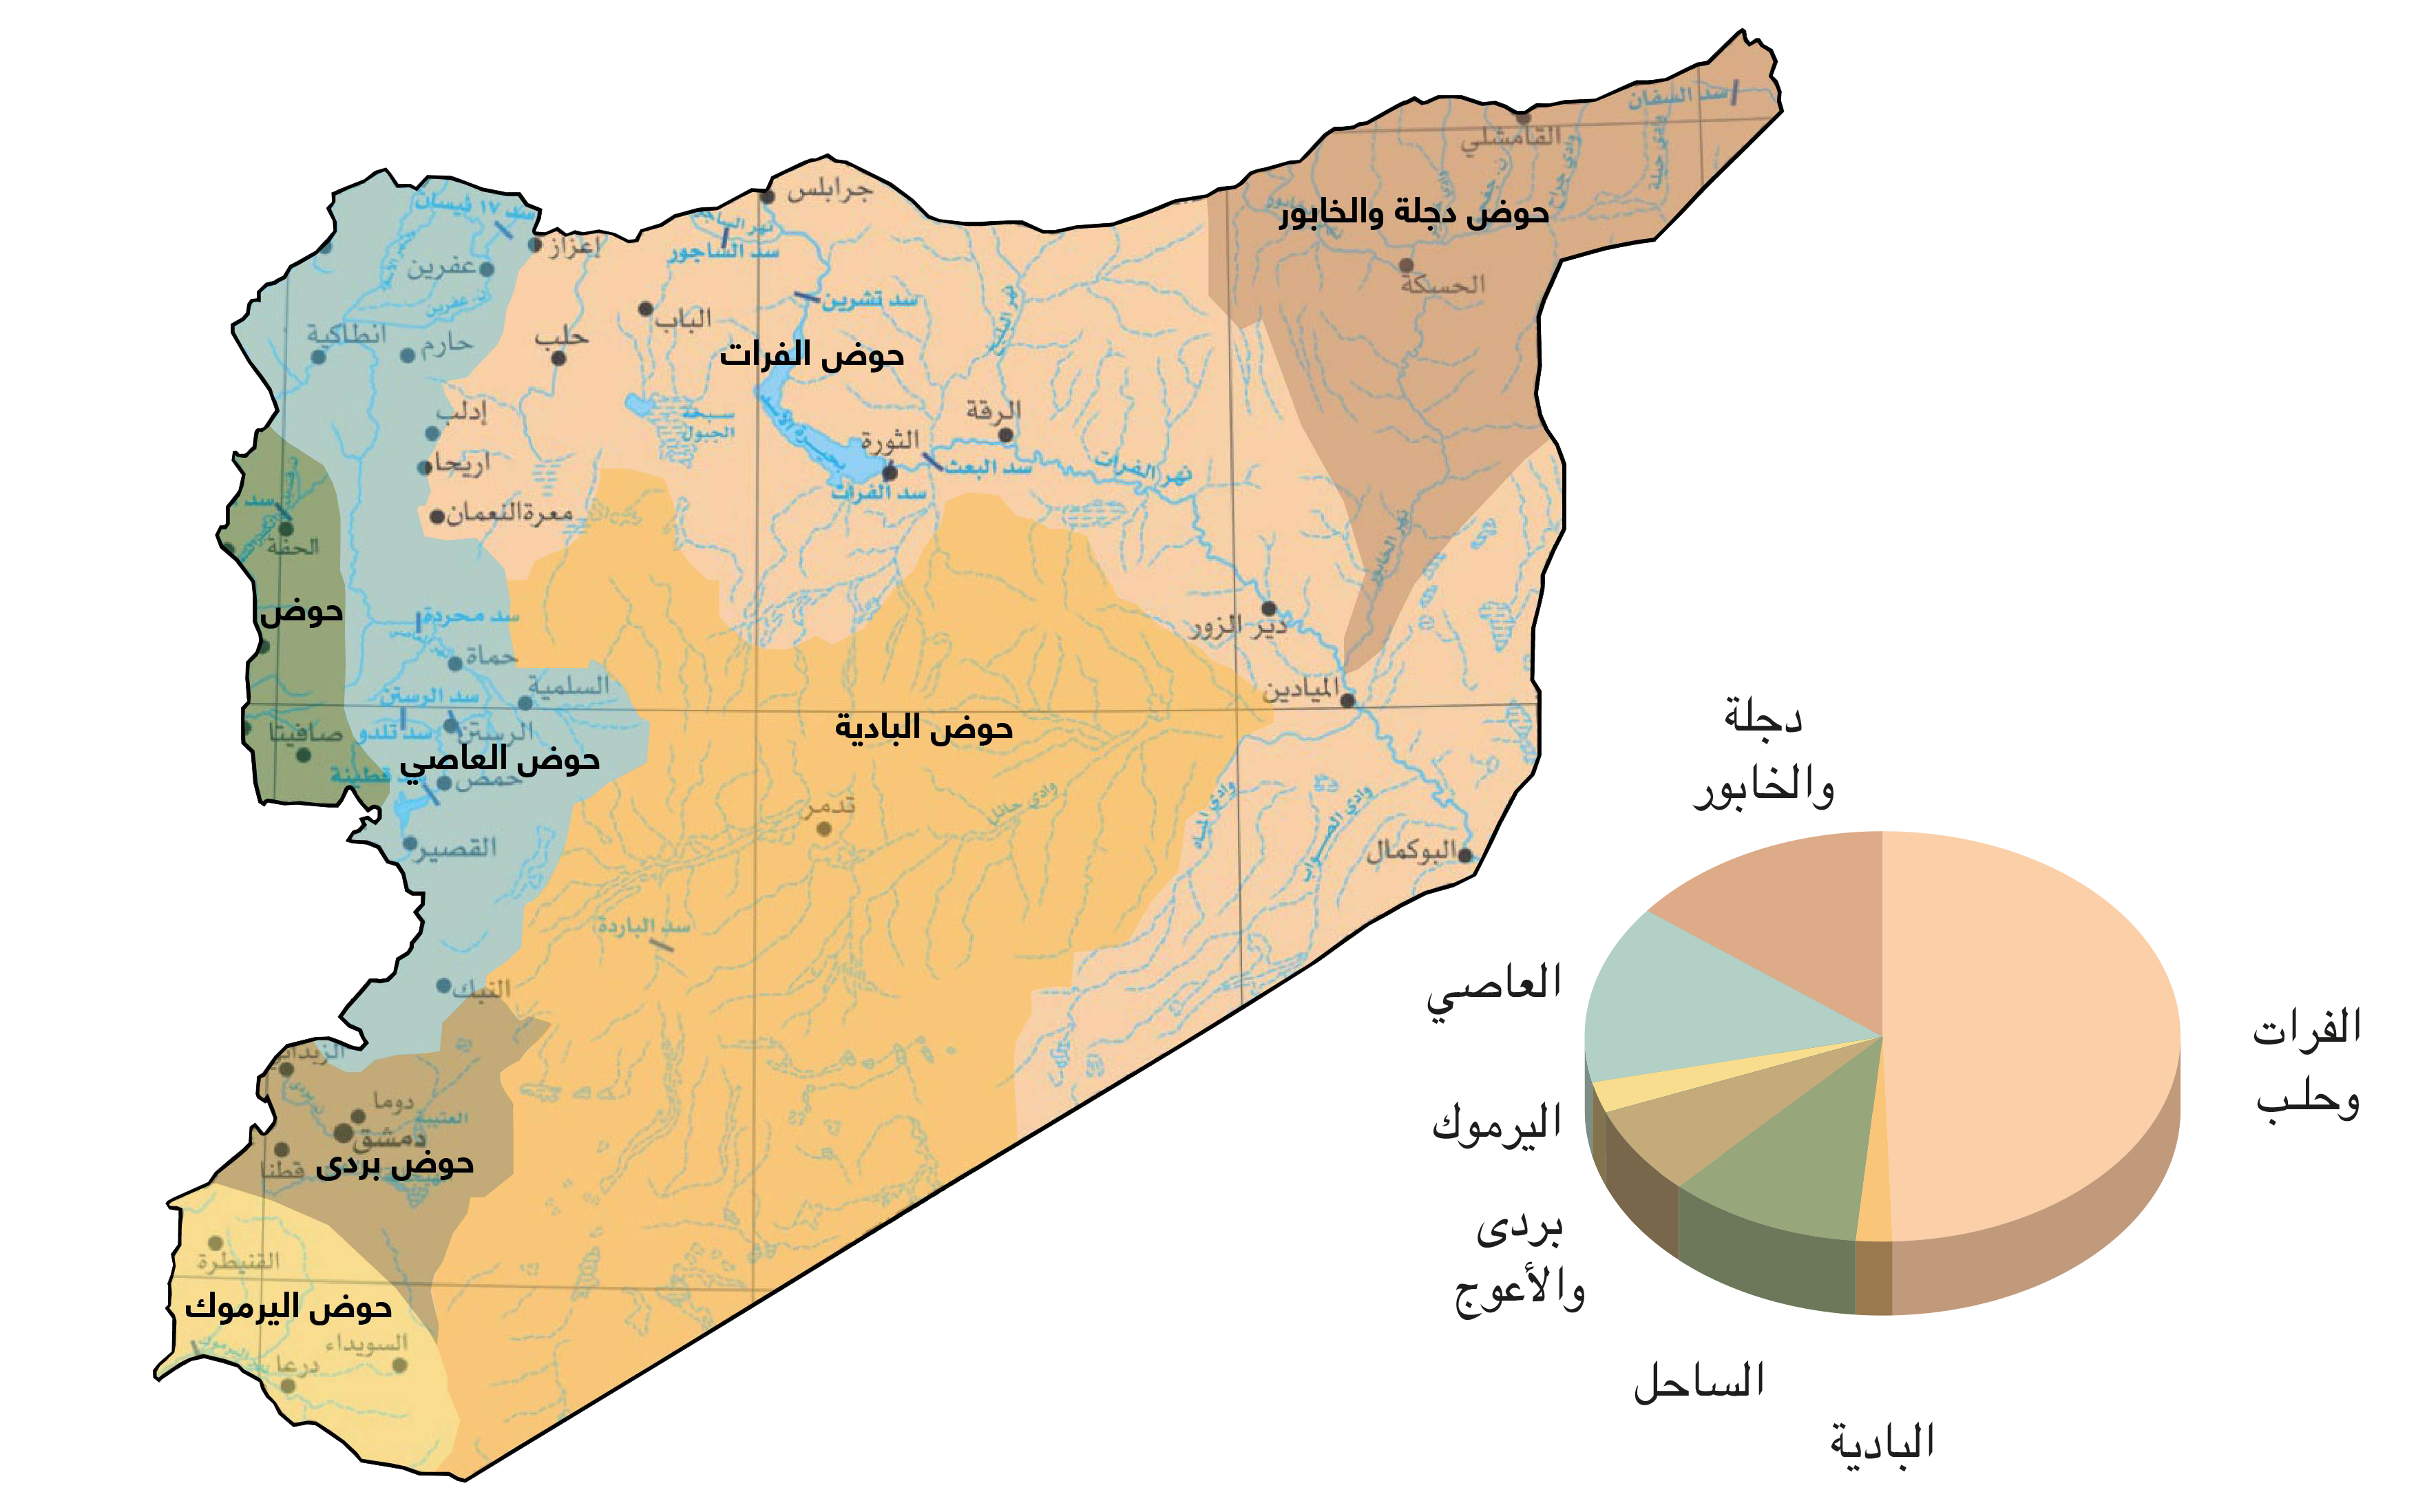 السيطرة العسكرية على الموارد المائية في أتون الثورة السورية